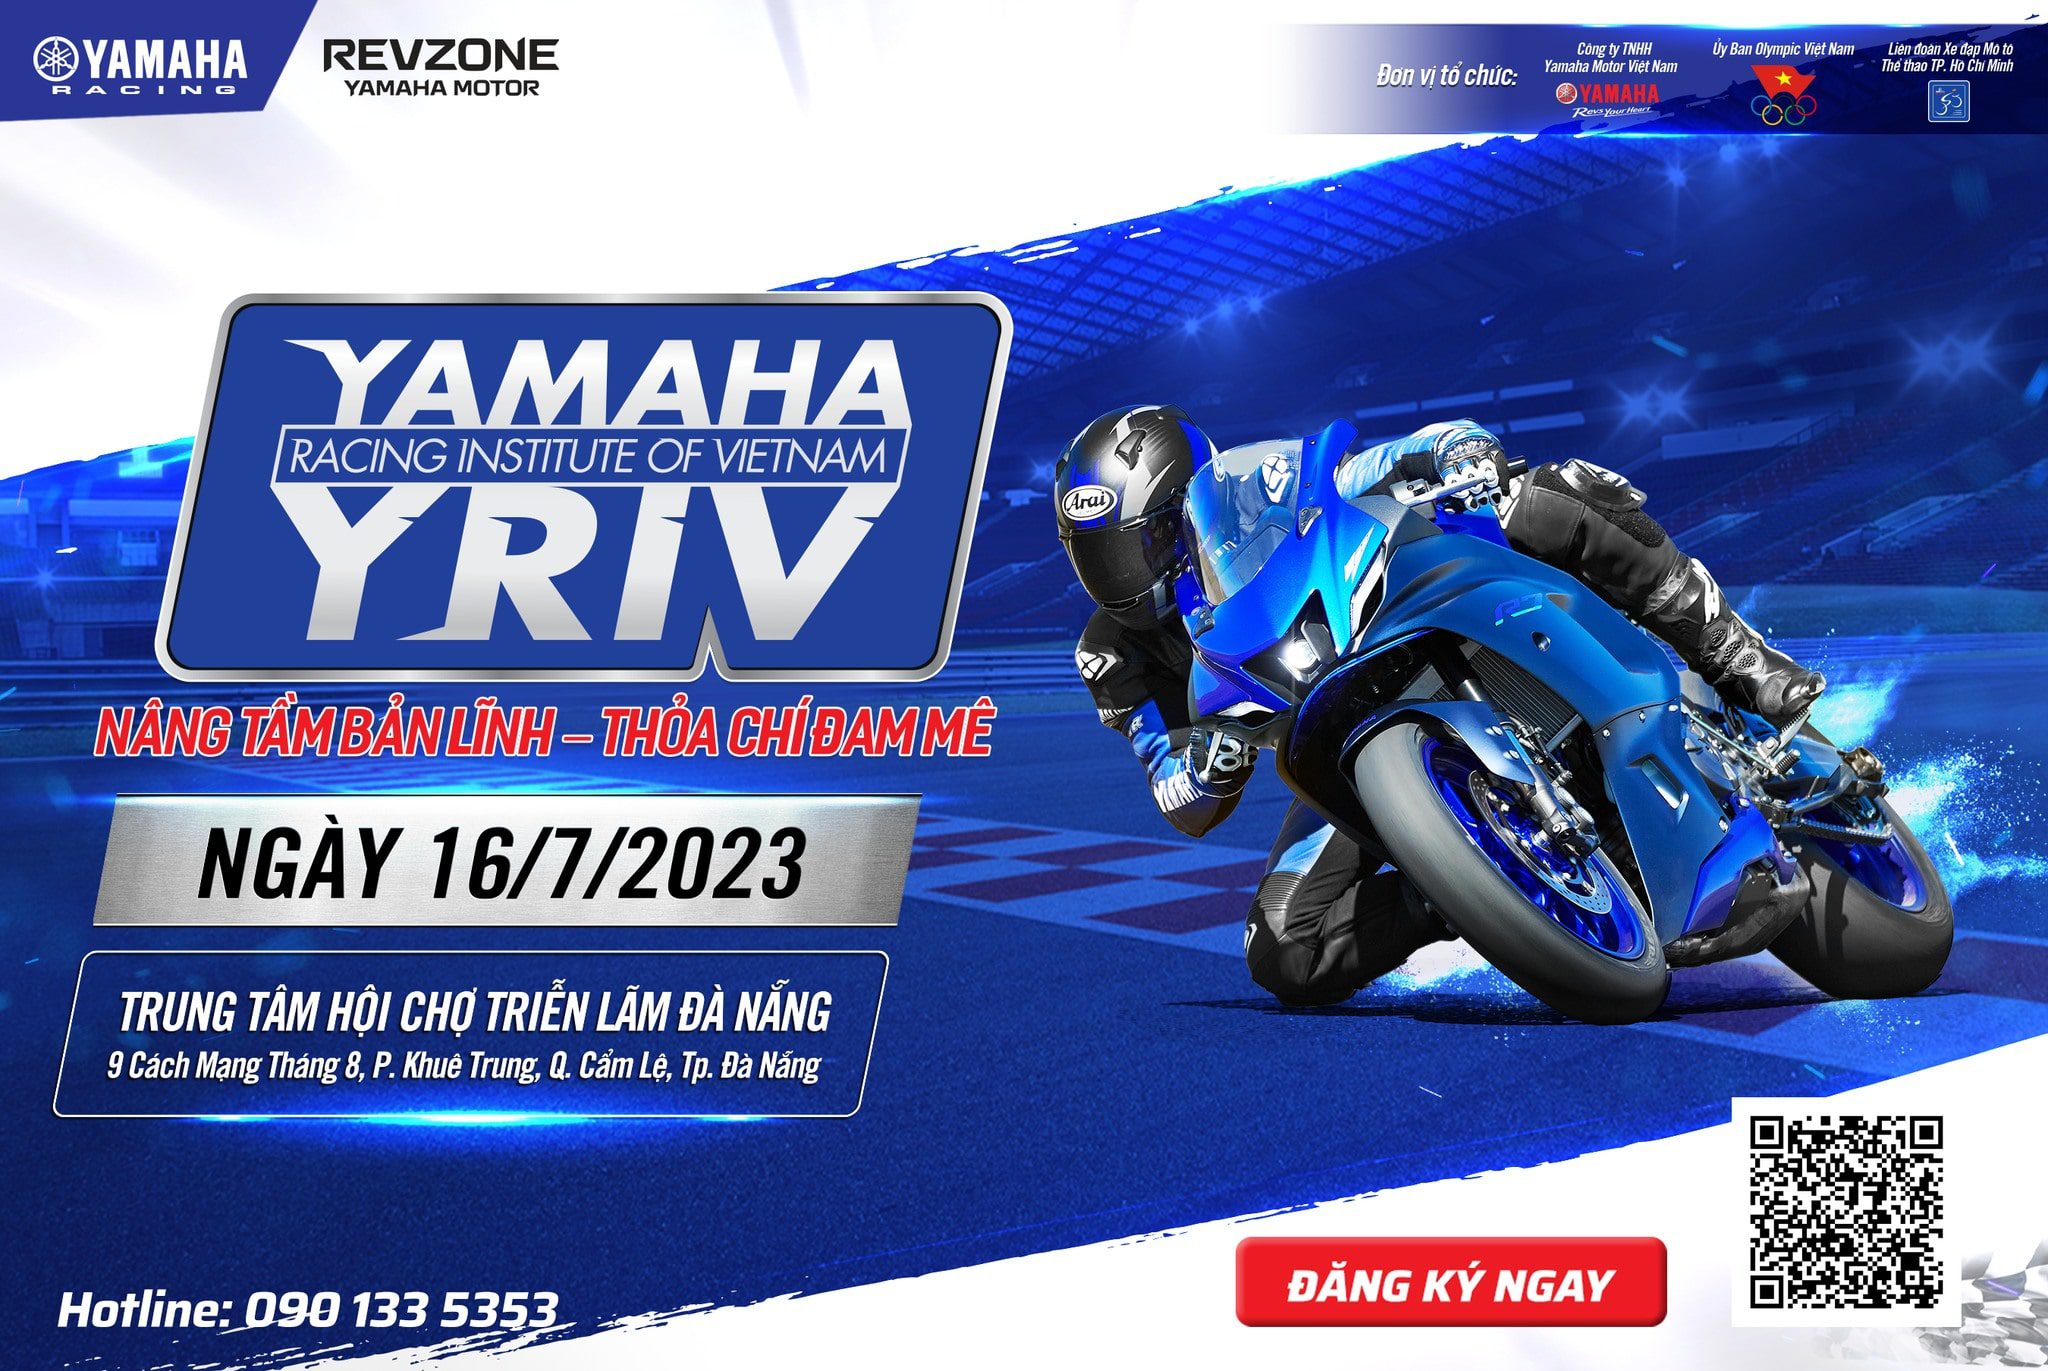 Revzone đồng hành cùng sự kiện Yamaha Racing Institute of Vietnam